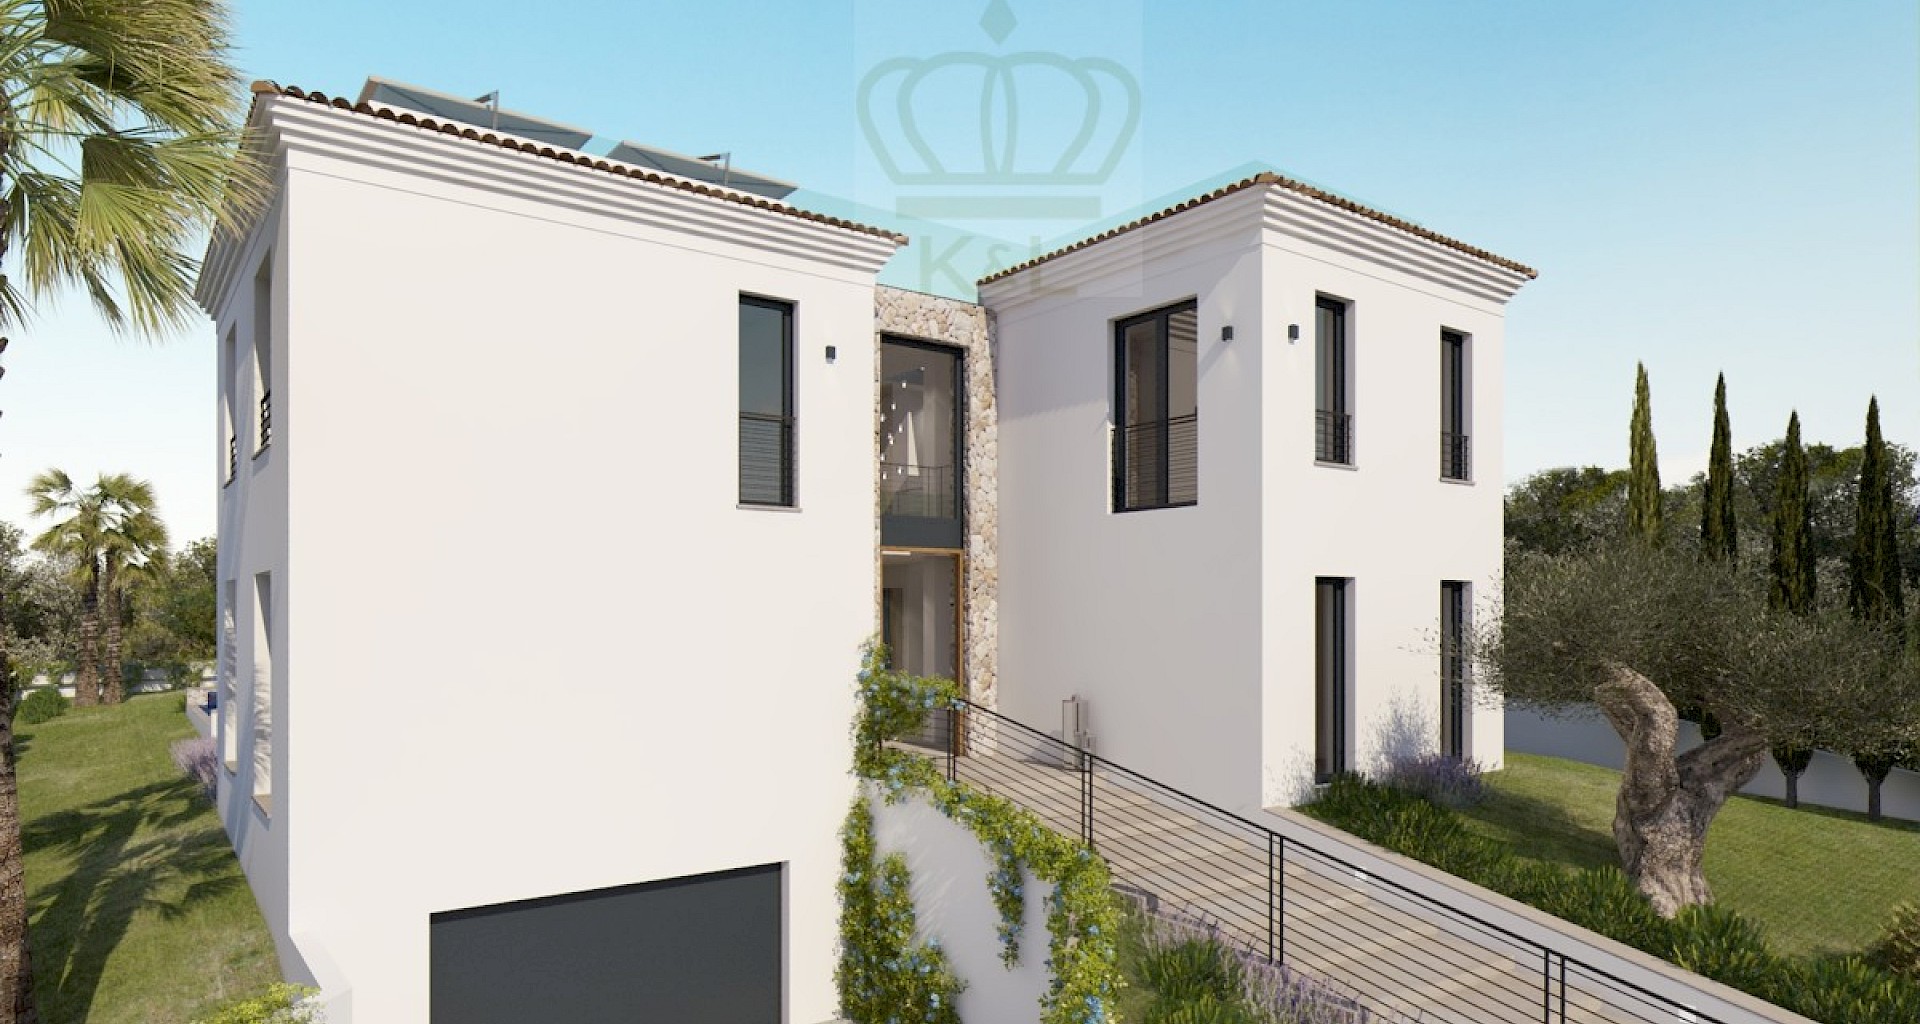 KROHN & LUEDEMANN Modern villa in Santa Ponsa with sea views Completion in 2021 Fassade